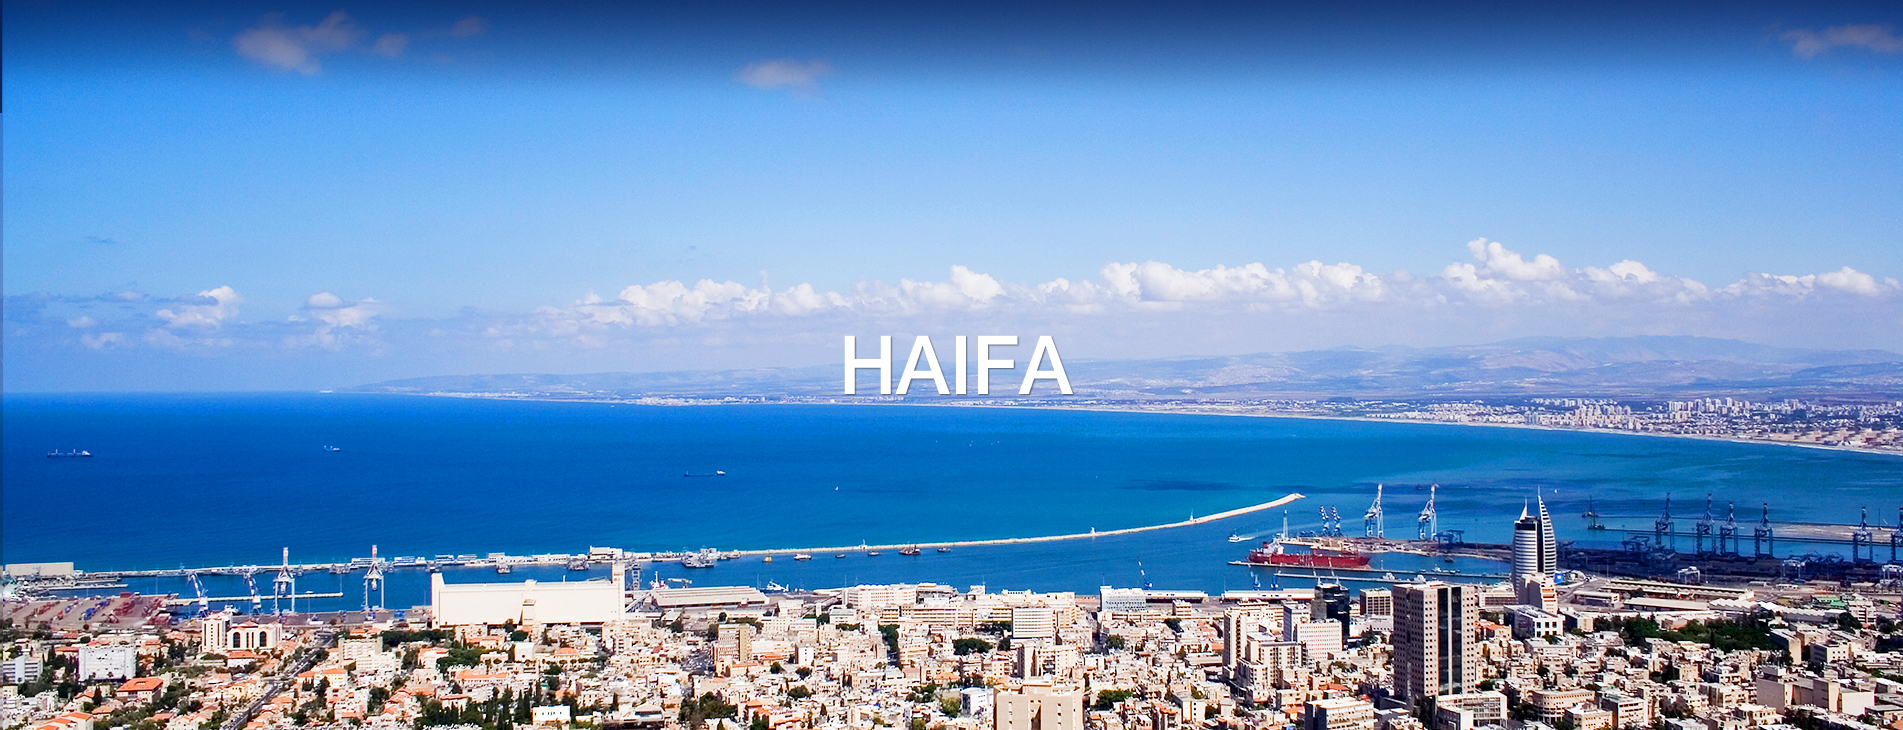 Haifa1